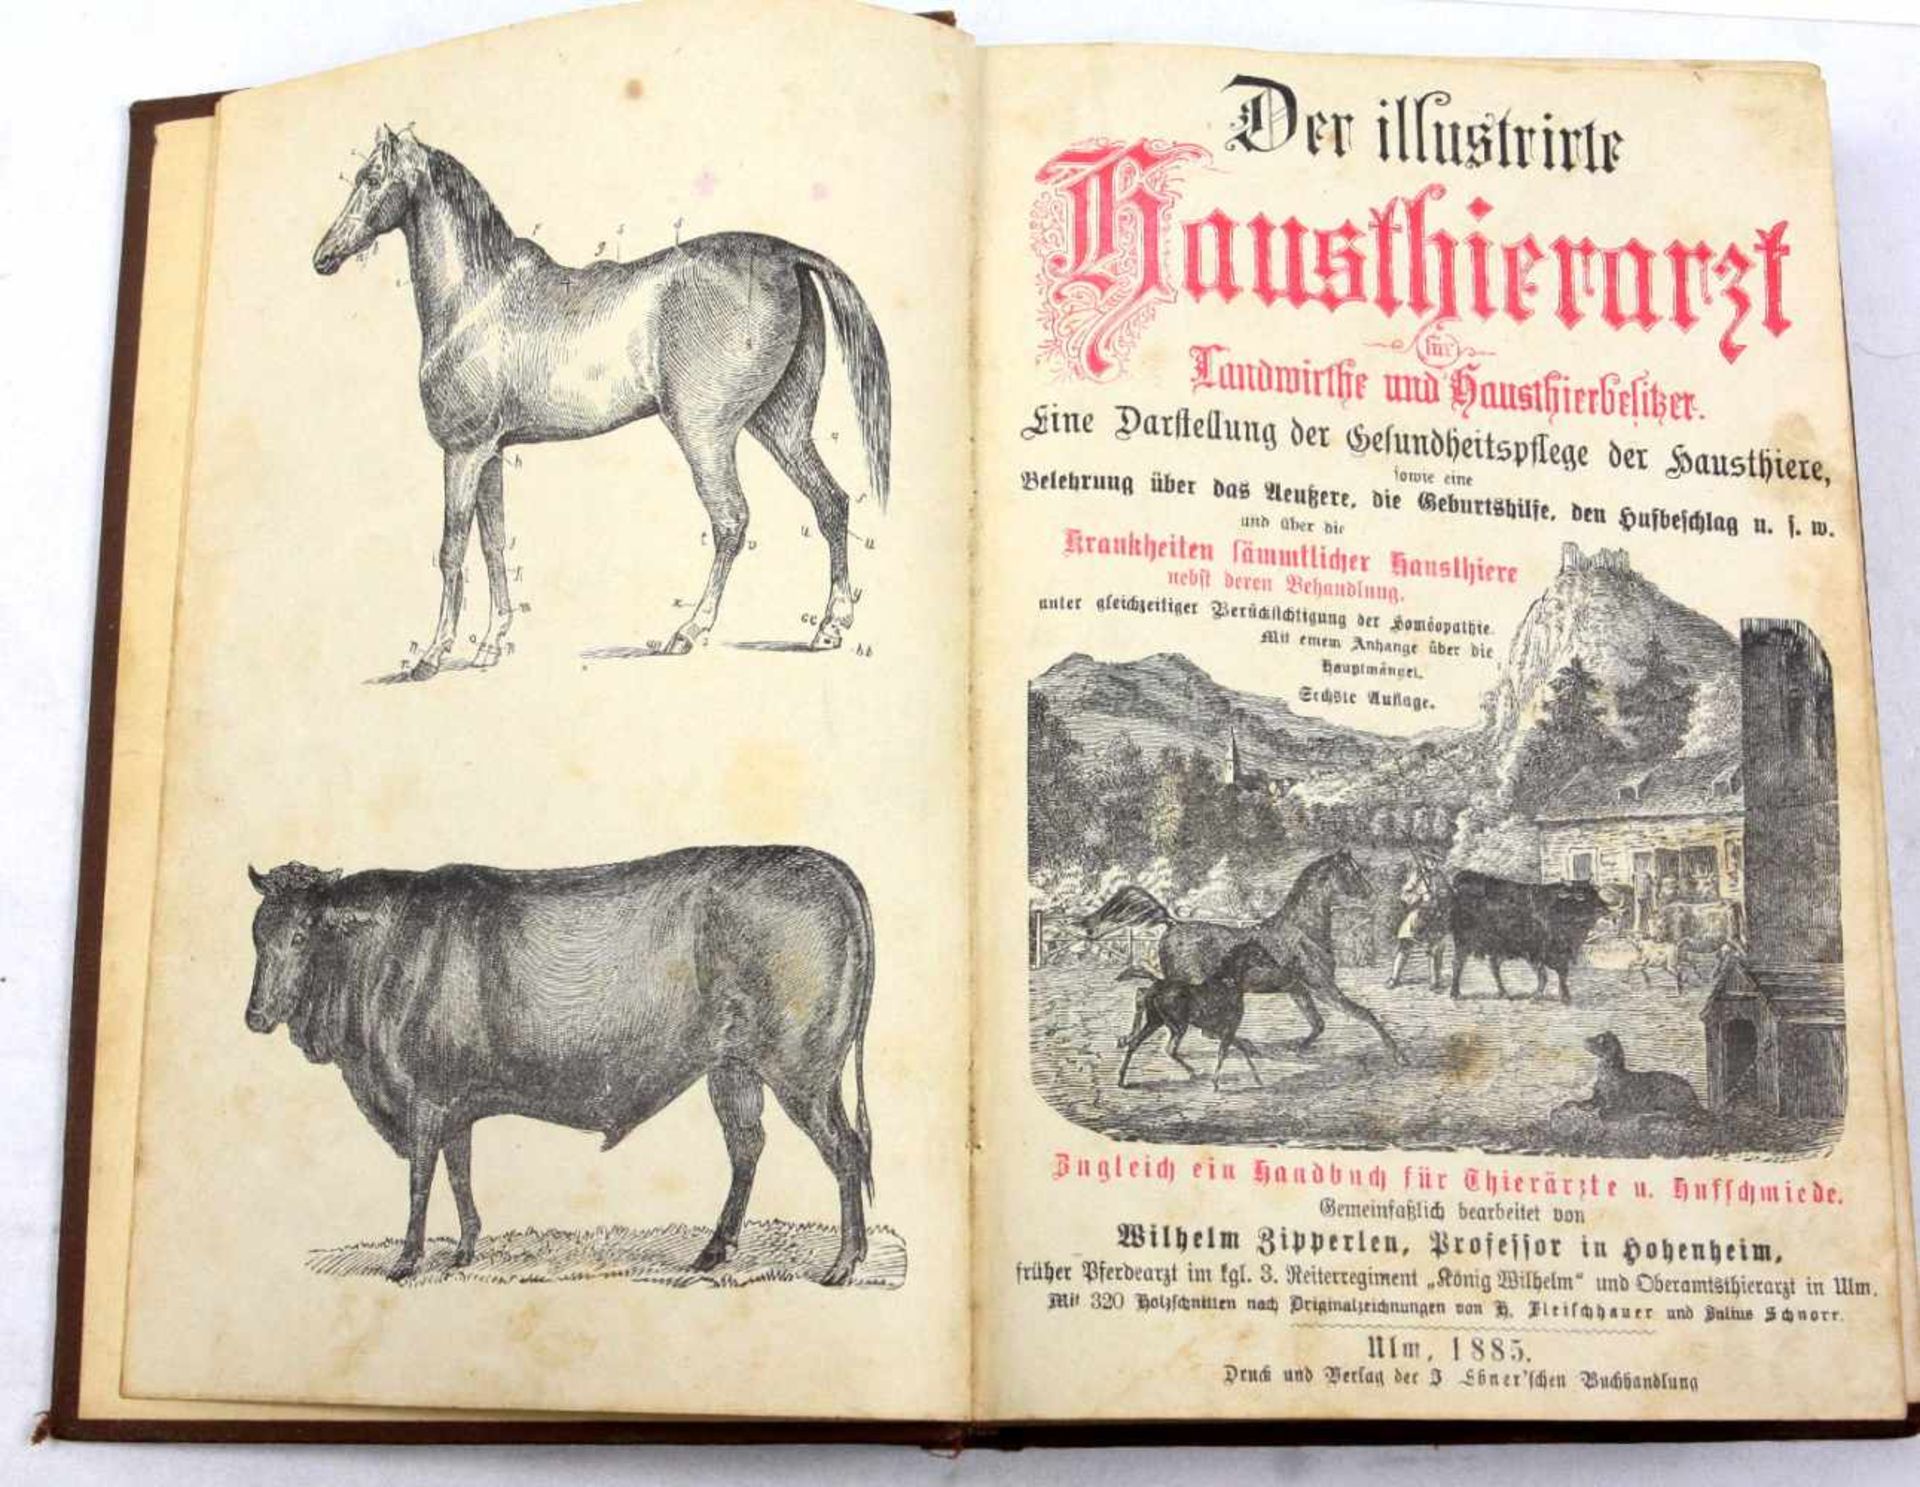 Der illustrirte Hausthierarzt Ulm 1885für Landwirthe und Hausthierliebhaber, eine Darstellung der